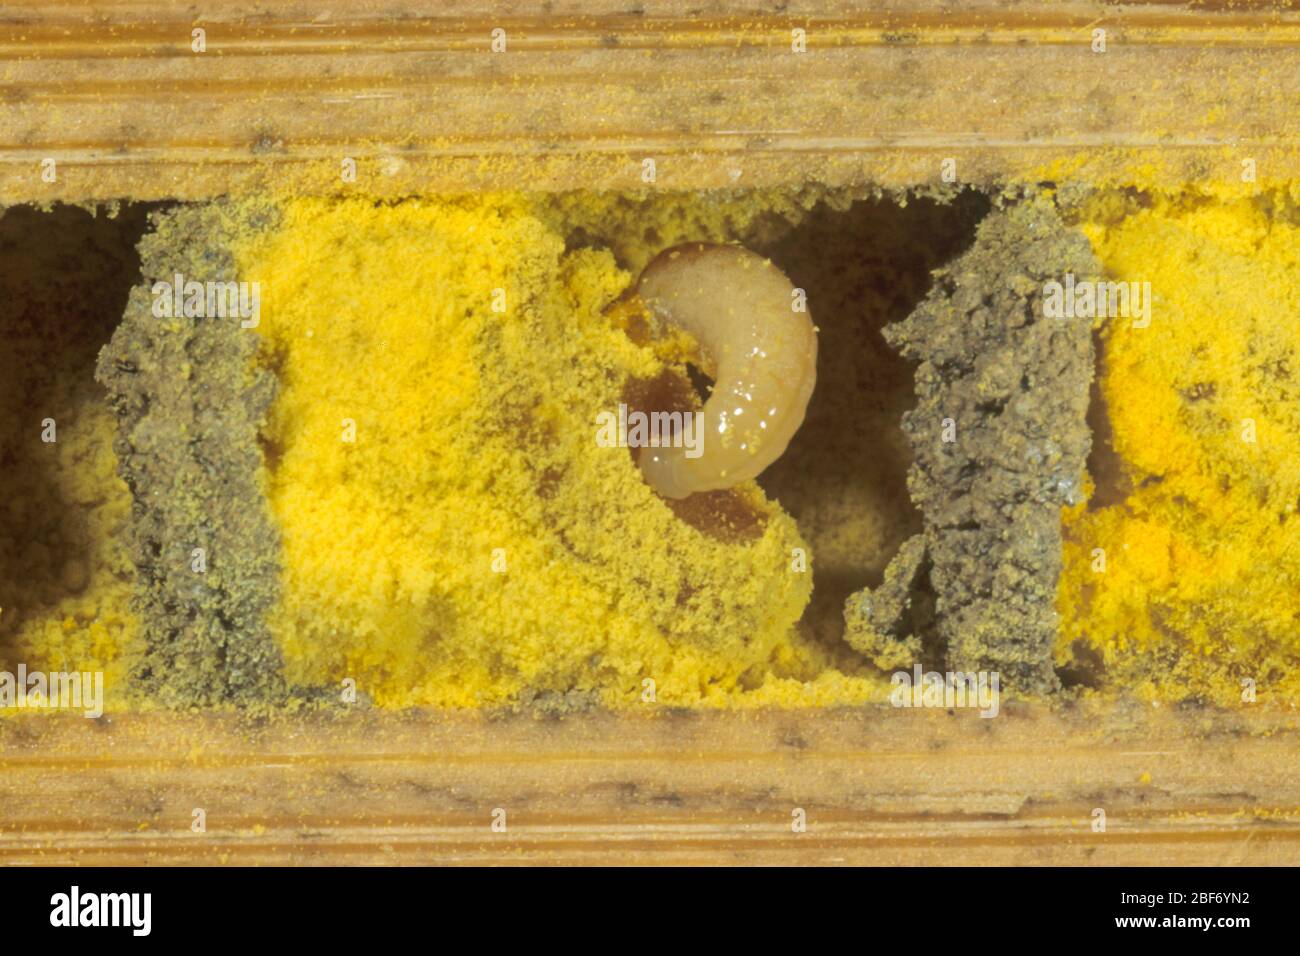 Abeille maçon rouge (Osmia rufa, Osmia bicornis), vue transversale d'un tube de reproduction avec larve et pollen, Allemagne Banque D'Images